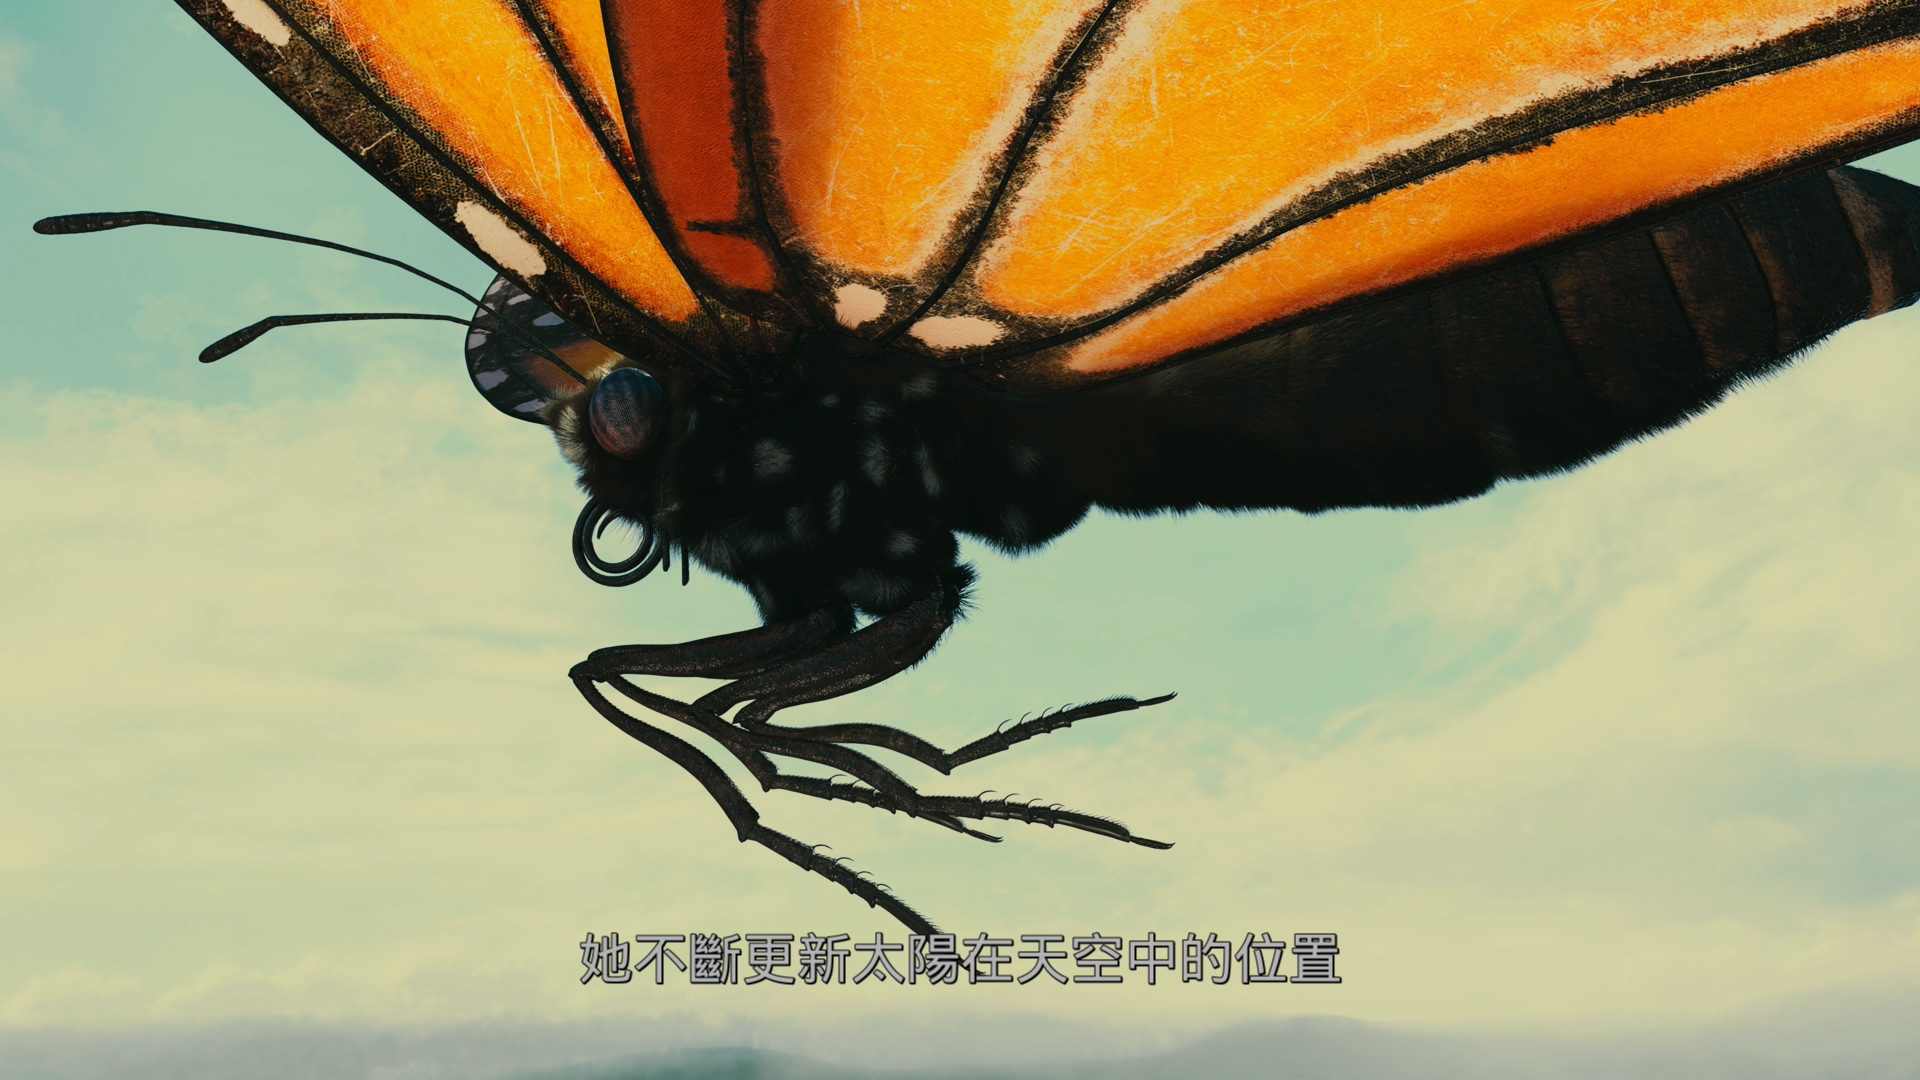 帝王蝶的迁徙[DIY简繁/简繁双语字幕] 4K UHD原盘 IMAX纪录片 Flight of the Butterflies 2012 2160p UHD Blu-ray HEVC Atmos-wezjh@OurBits     [53.13 GB]-3.jpg